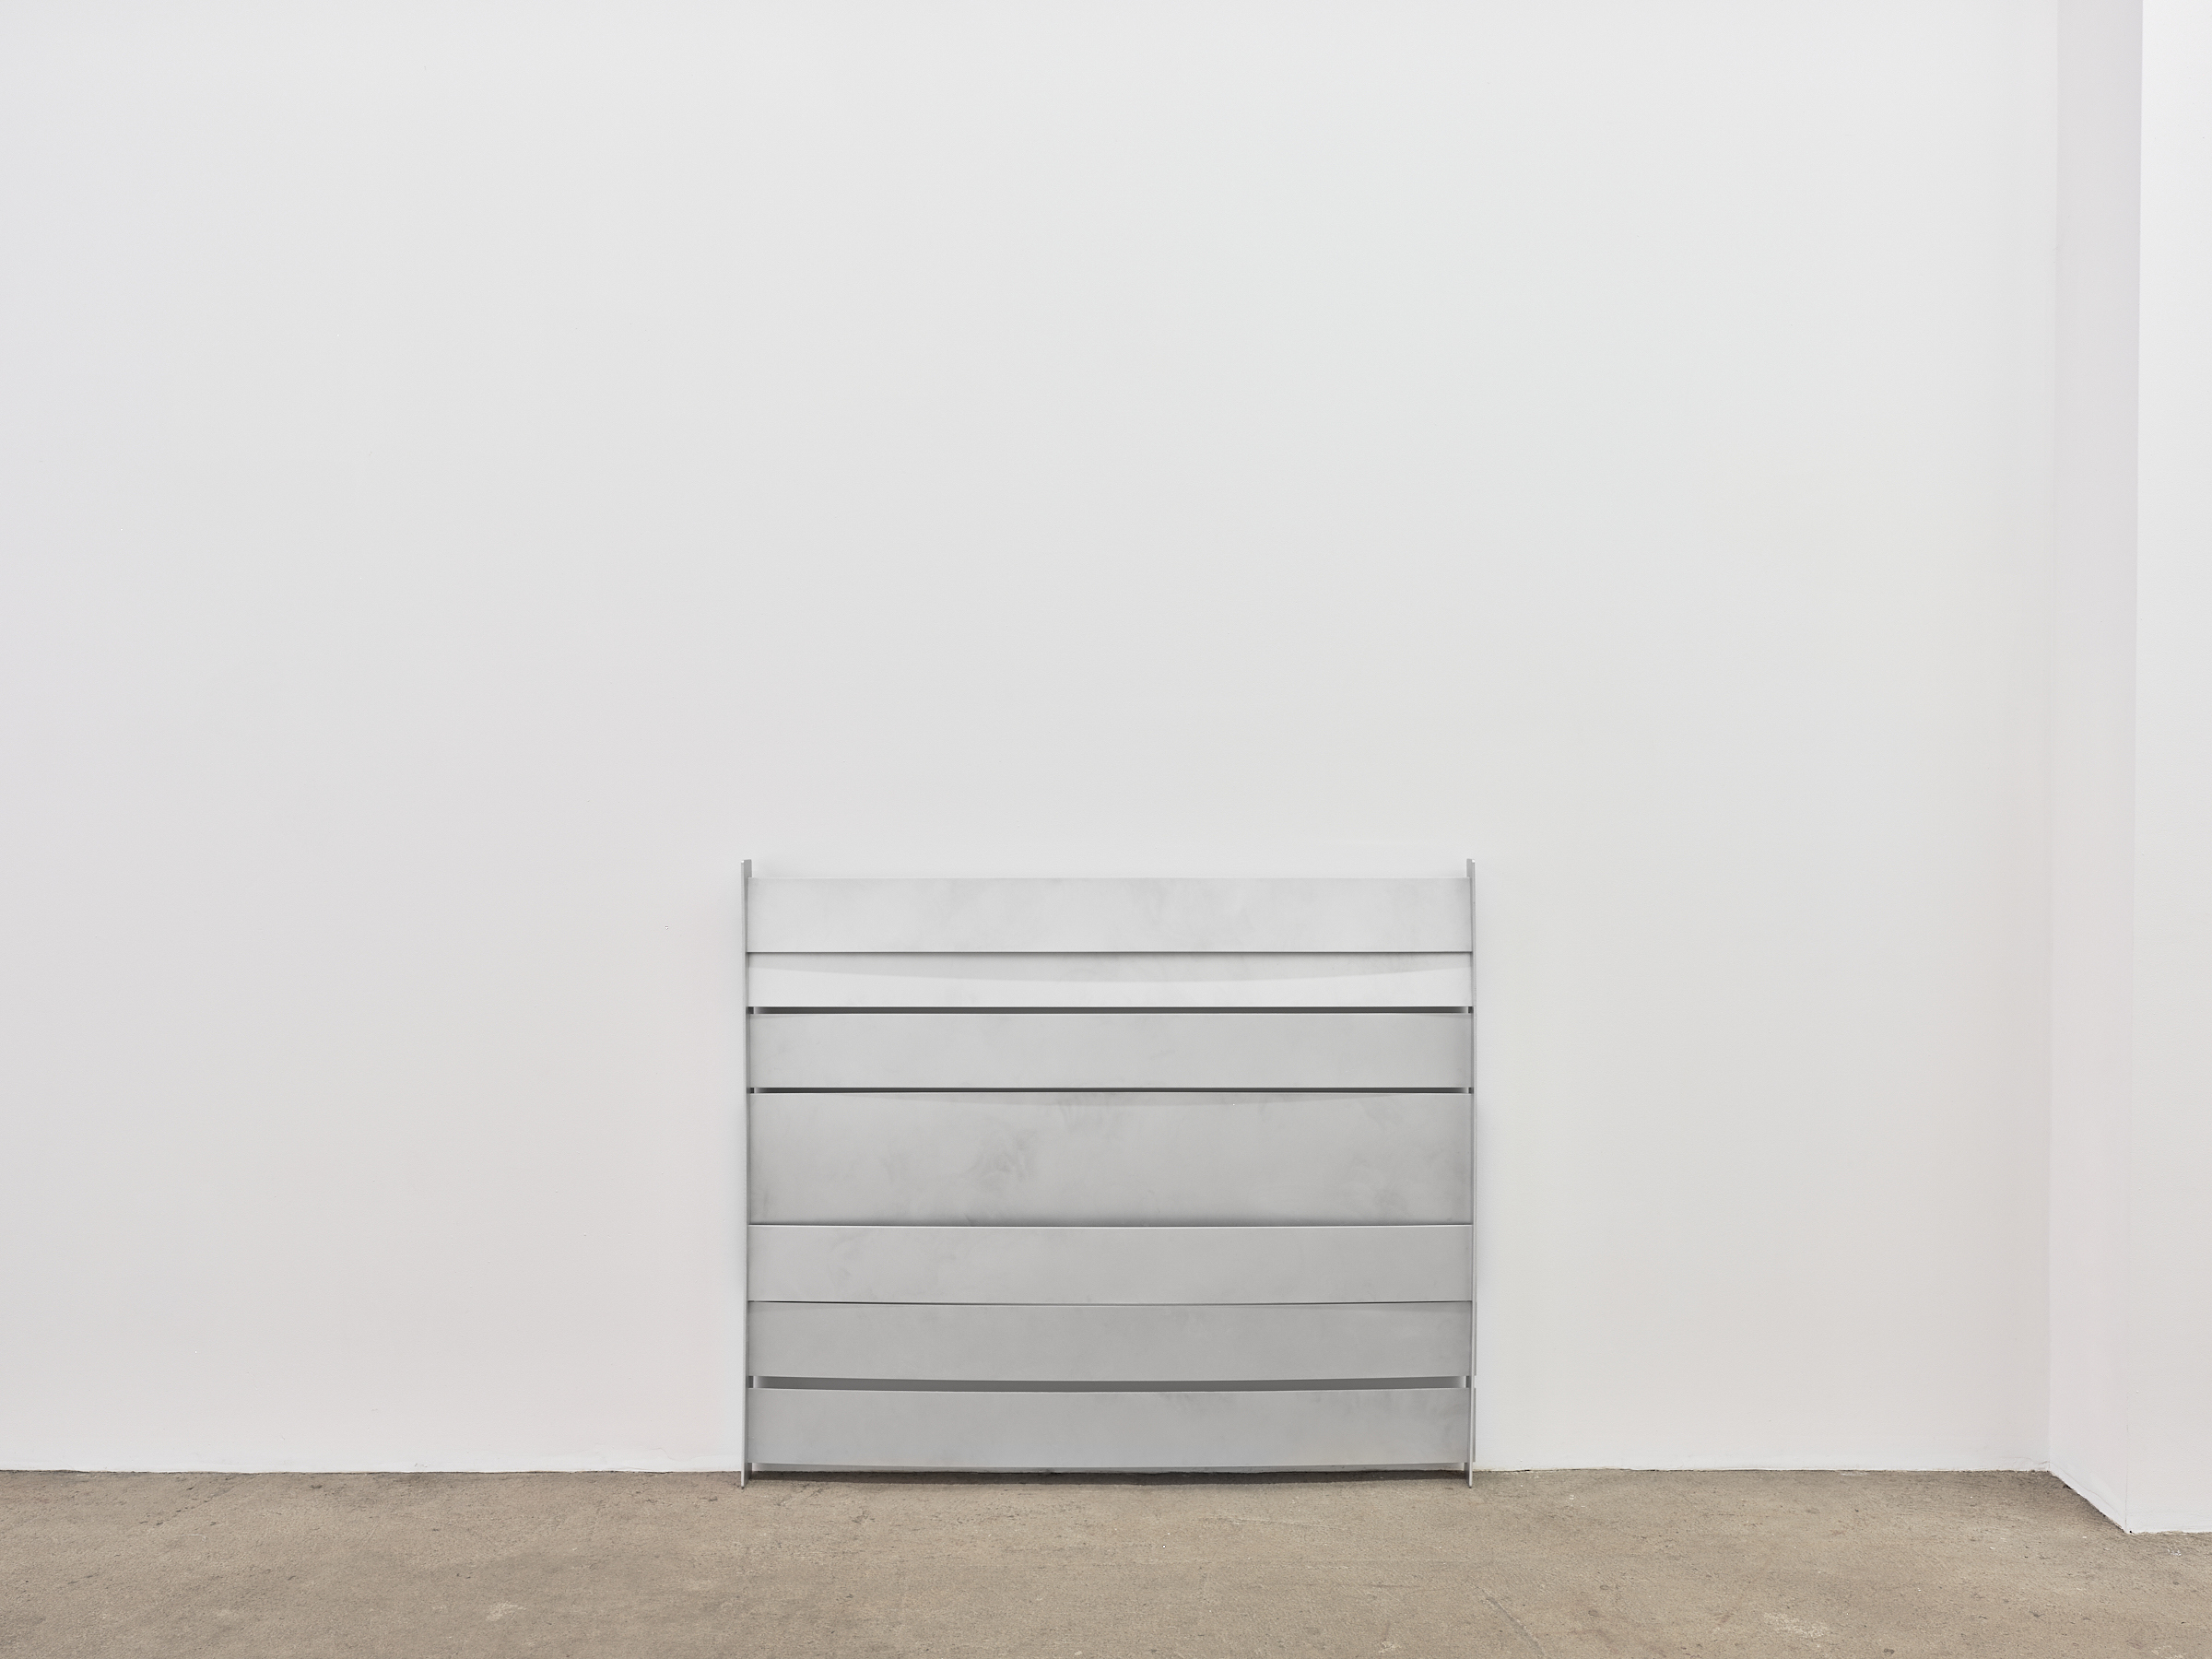 Elizabeth Orr "Indoor", 2022 aluminum, wood 48 x 41 x 3 inches (122 x 104 x 8 cm) 